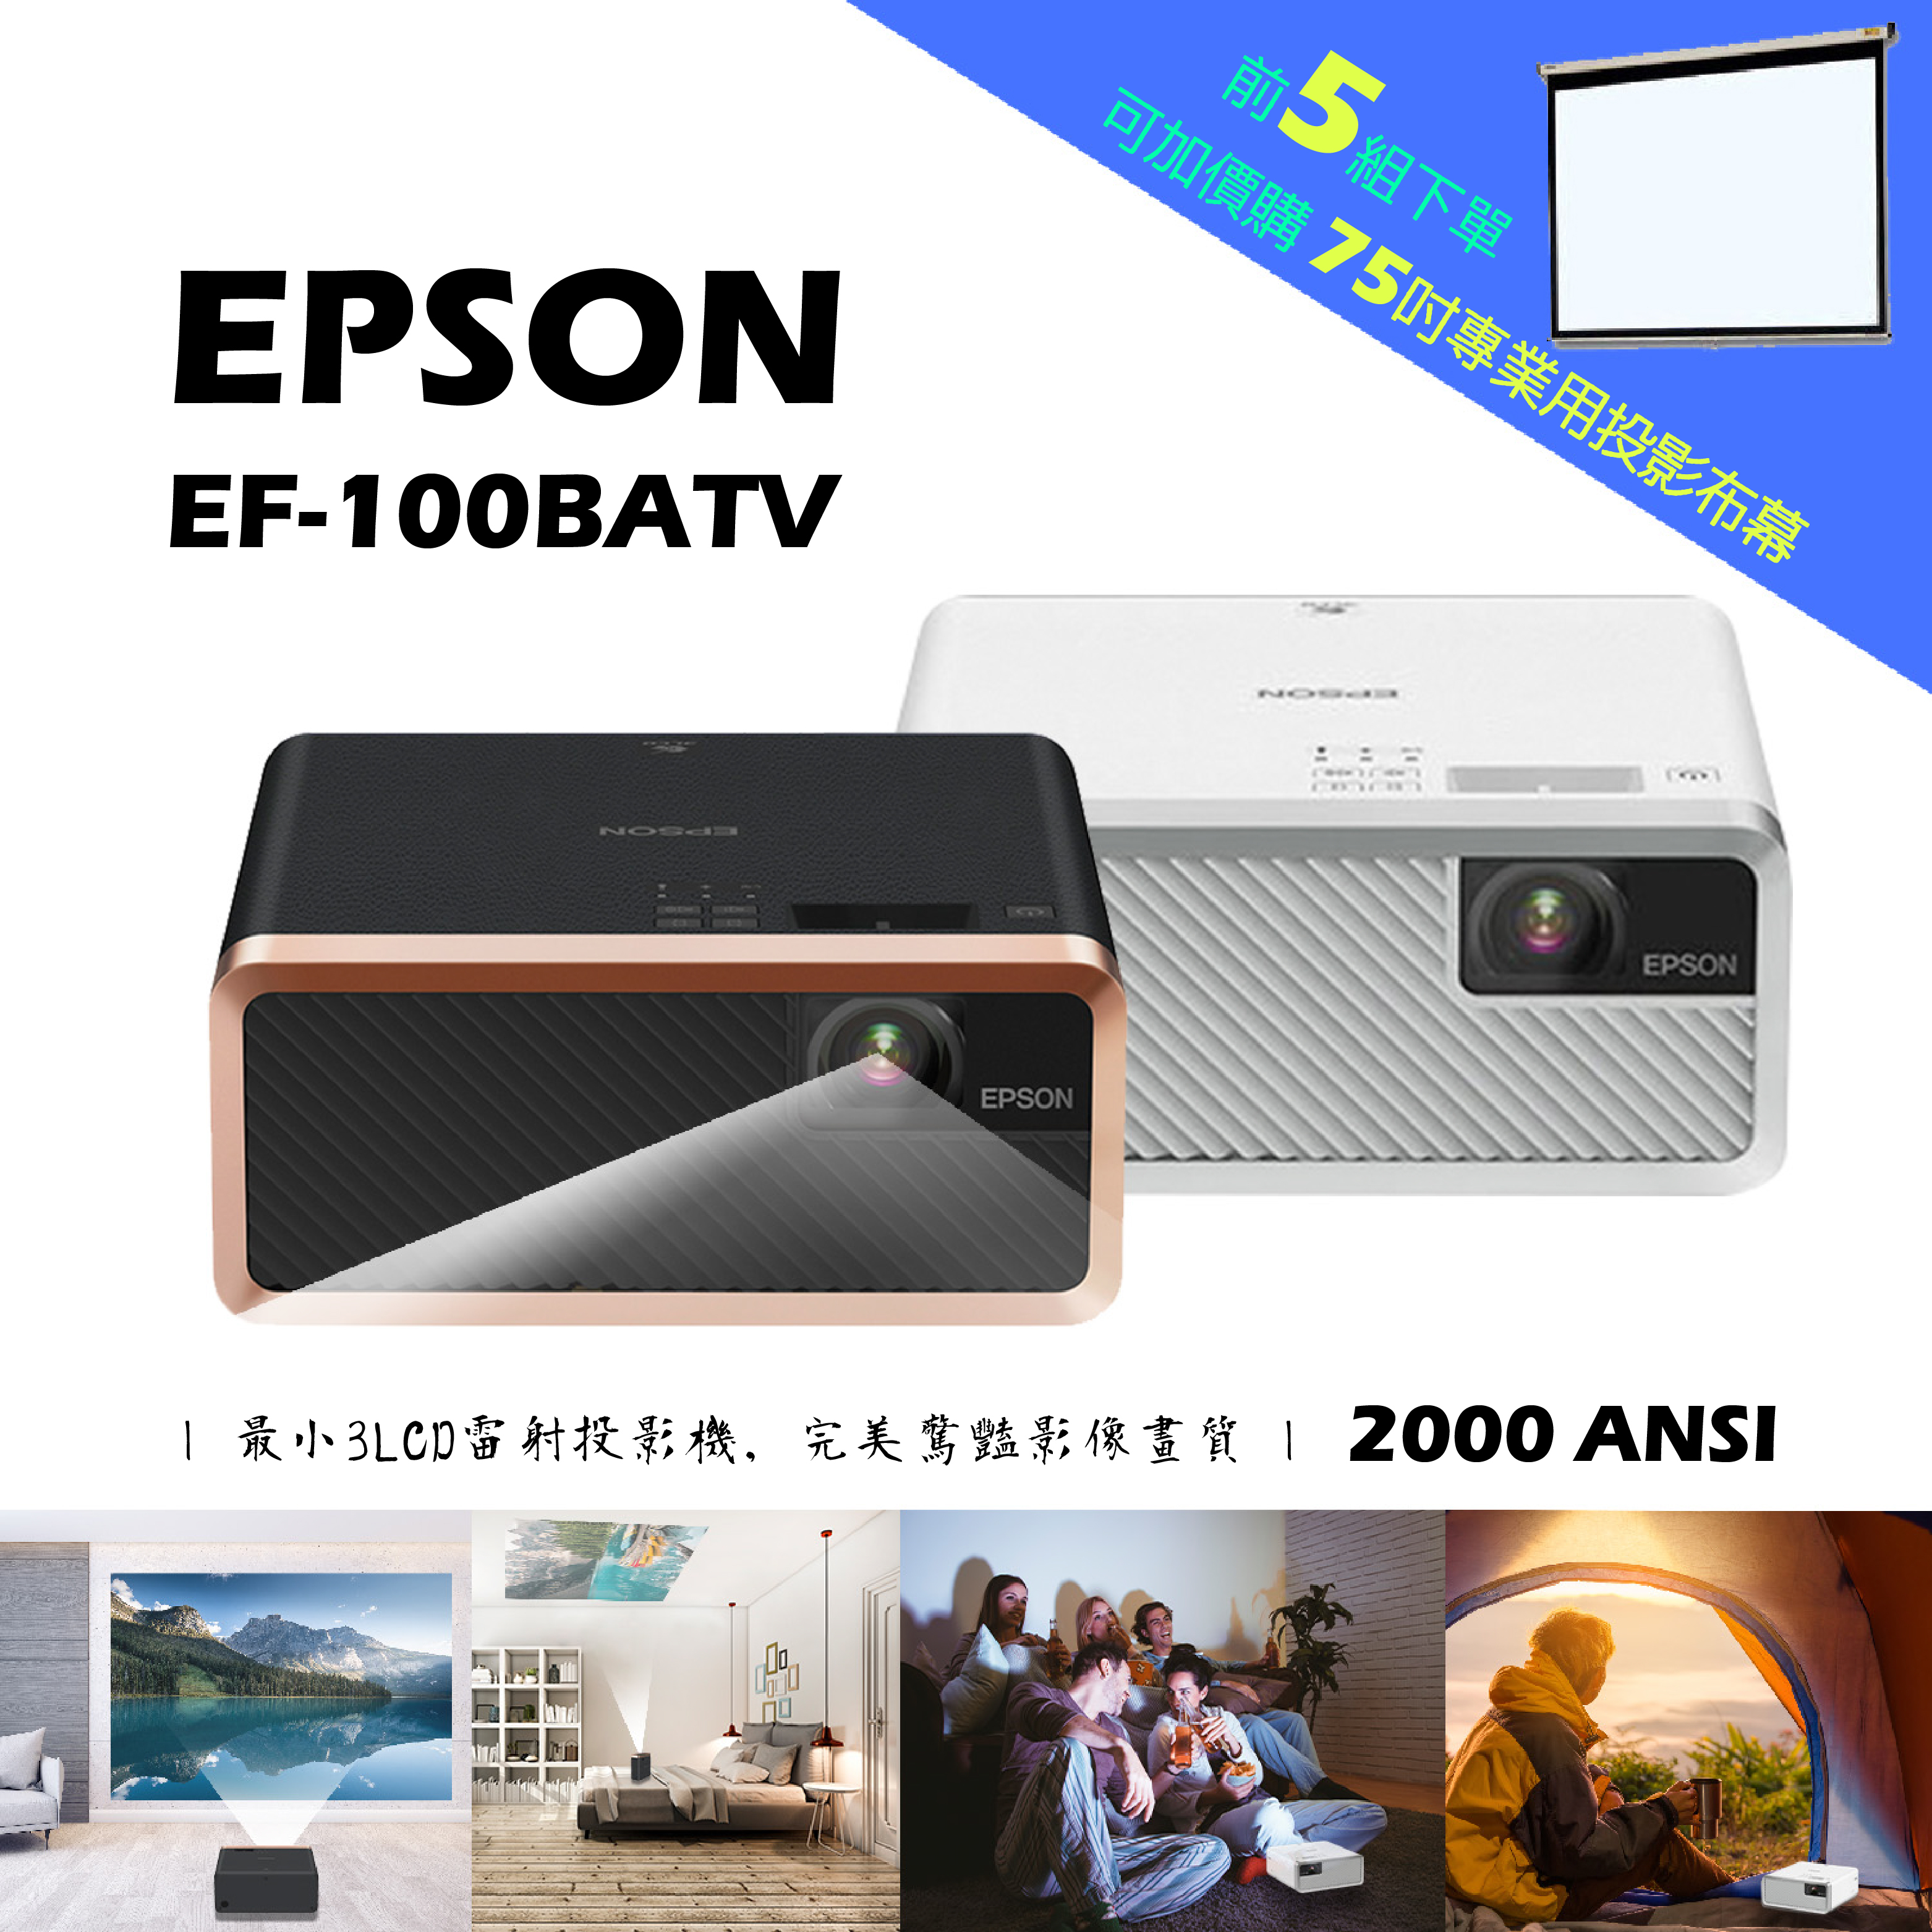 預購!!【微型投影- 移動新視界】市面上目前最小3LCD雷射投影機EPSON EF